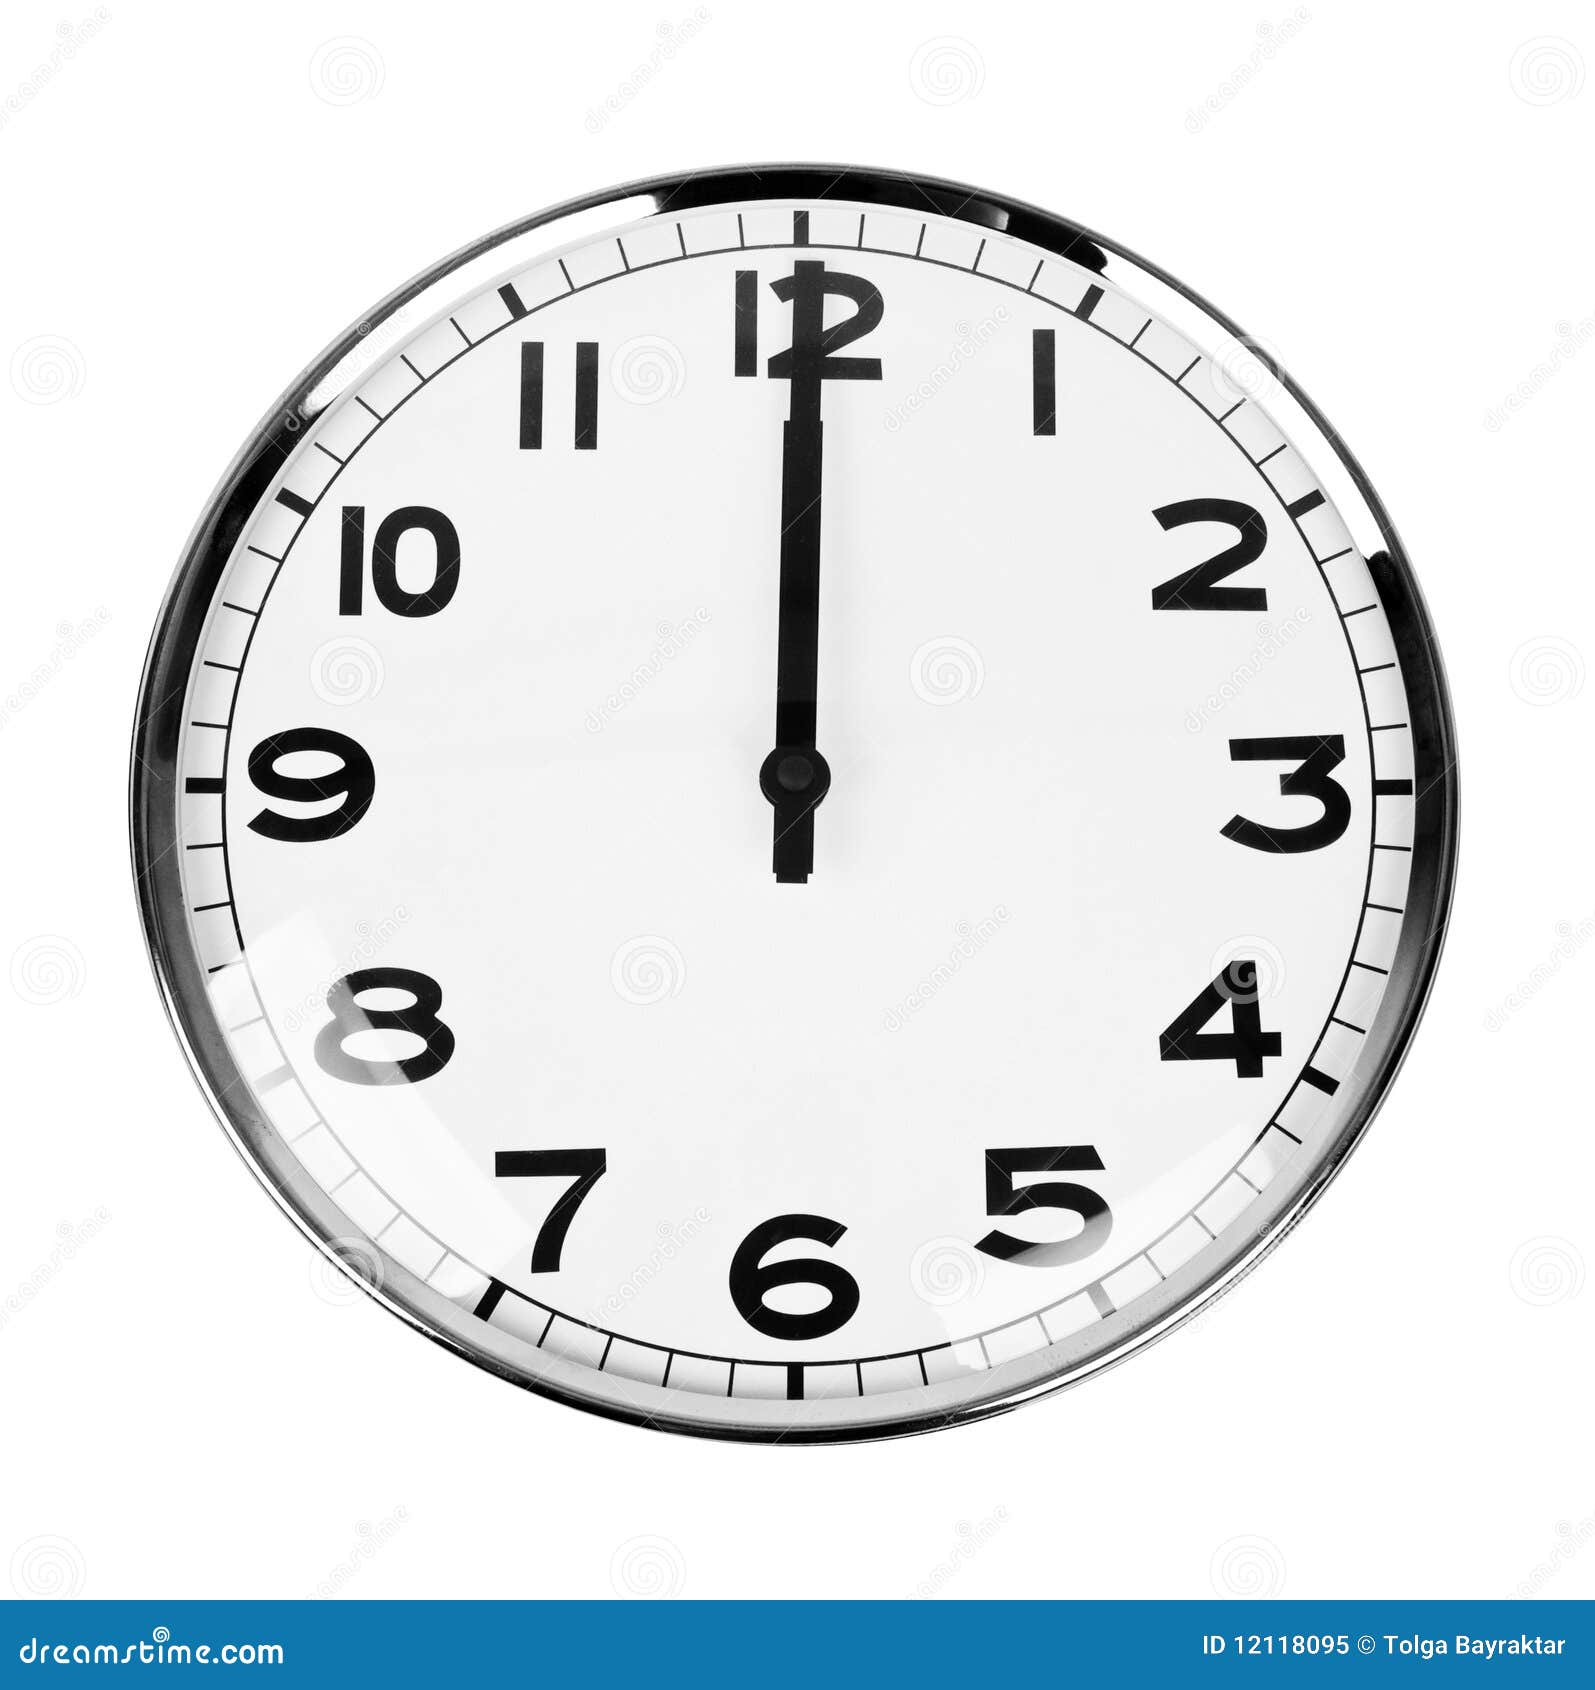 12 часов 17.03. Часы показывают 12 часов. Часы 12 00. Изображение часов со стрелками. Полдень на часах.